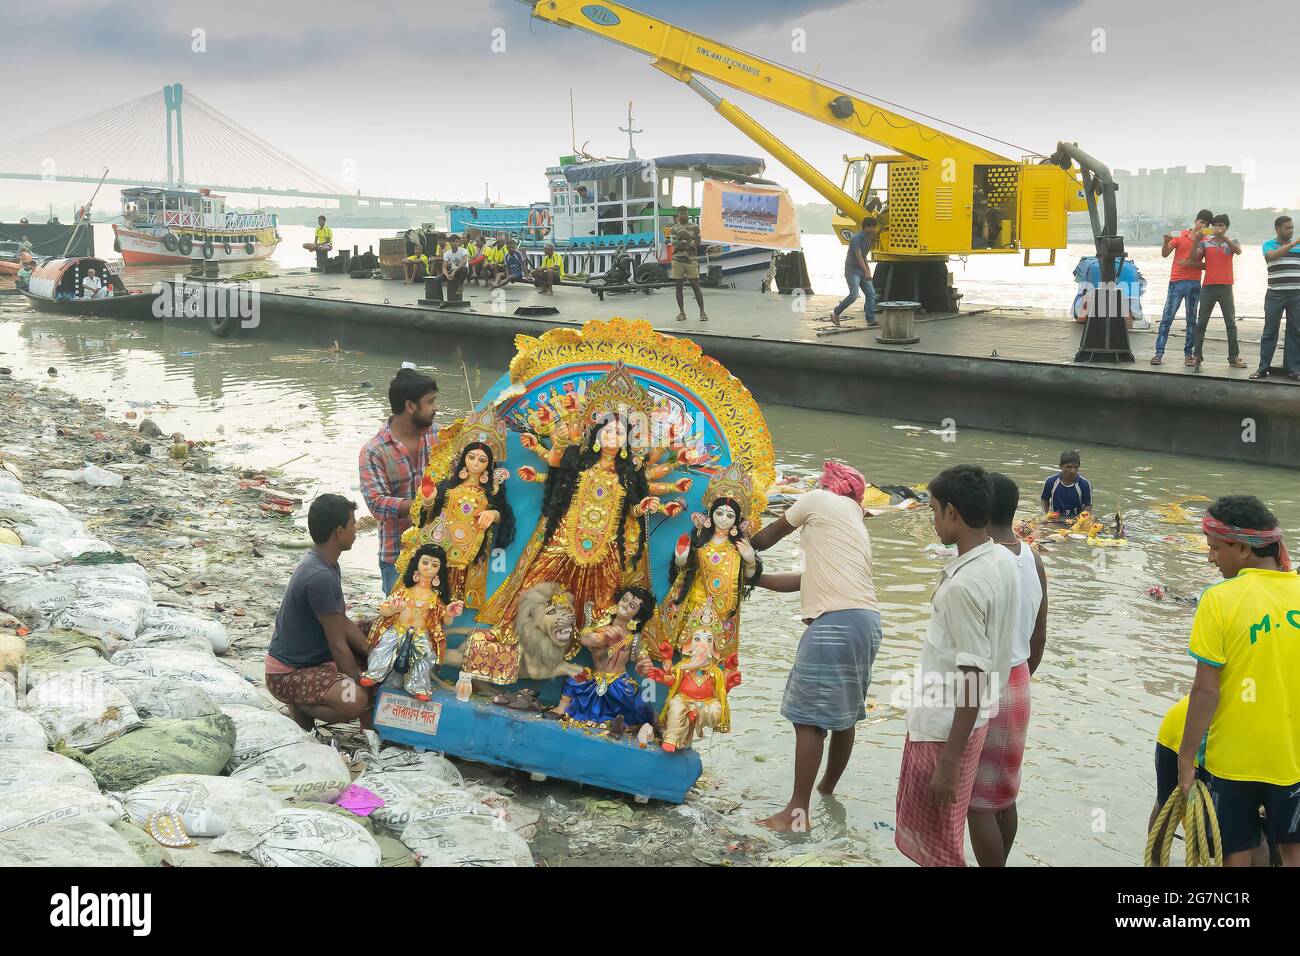 Kolkata, Bengale-Occidental, Inde - 30 septembre 2017 : l'Idol de la déesse Durga est transporté au Gange pour immersion, à la fin de Durga Puja fes Banque D'Images